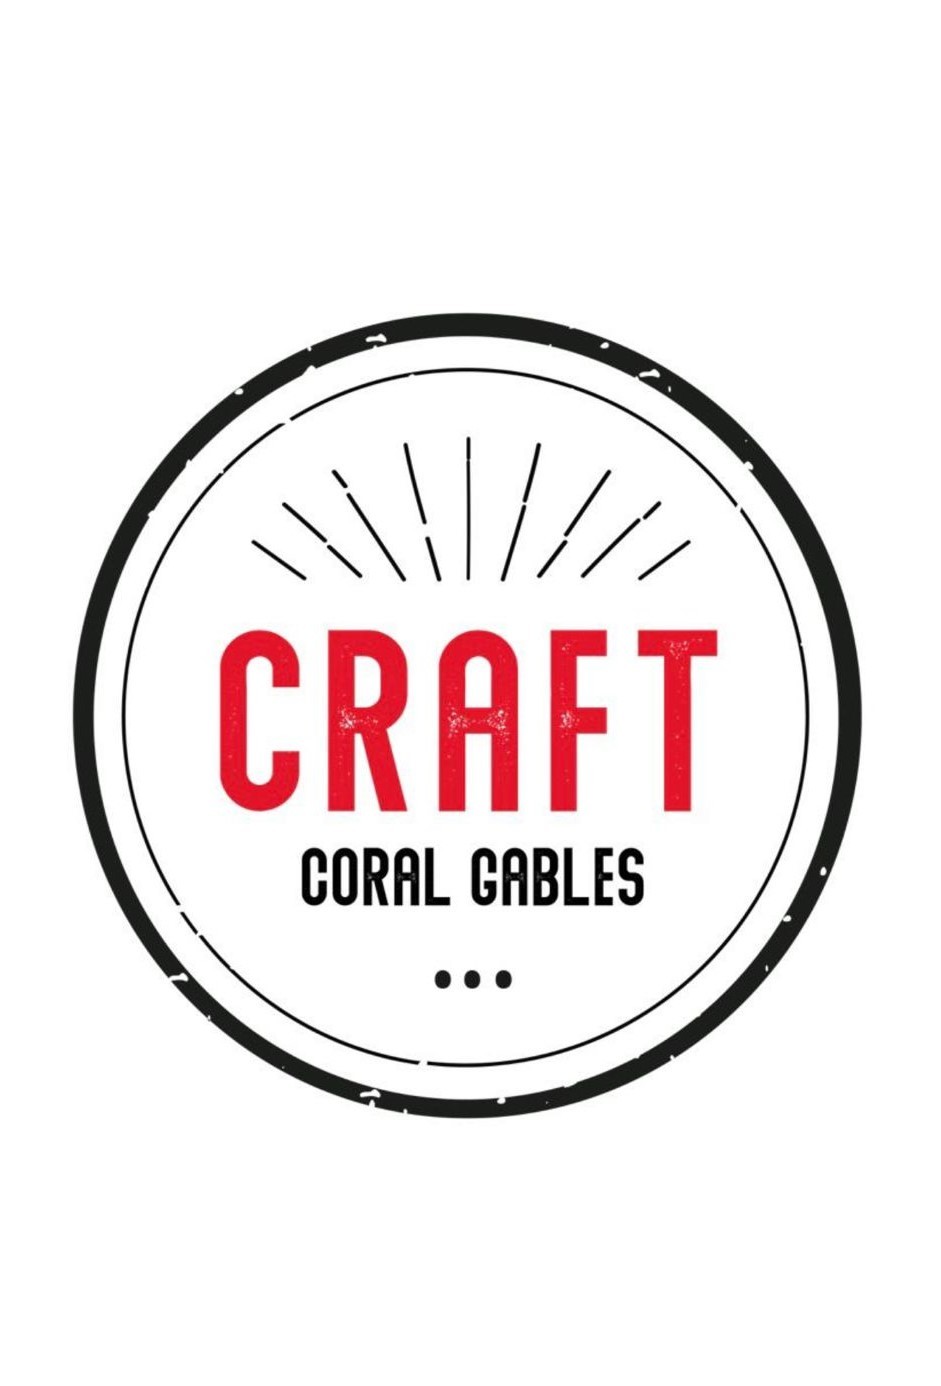 CRAFT Coral Gables 127 Giralda Av.